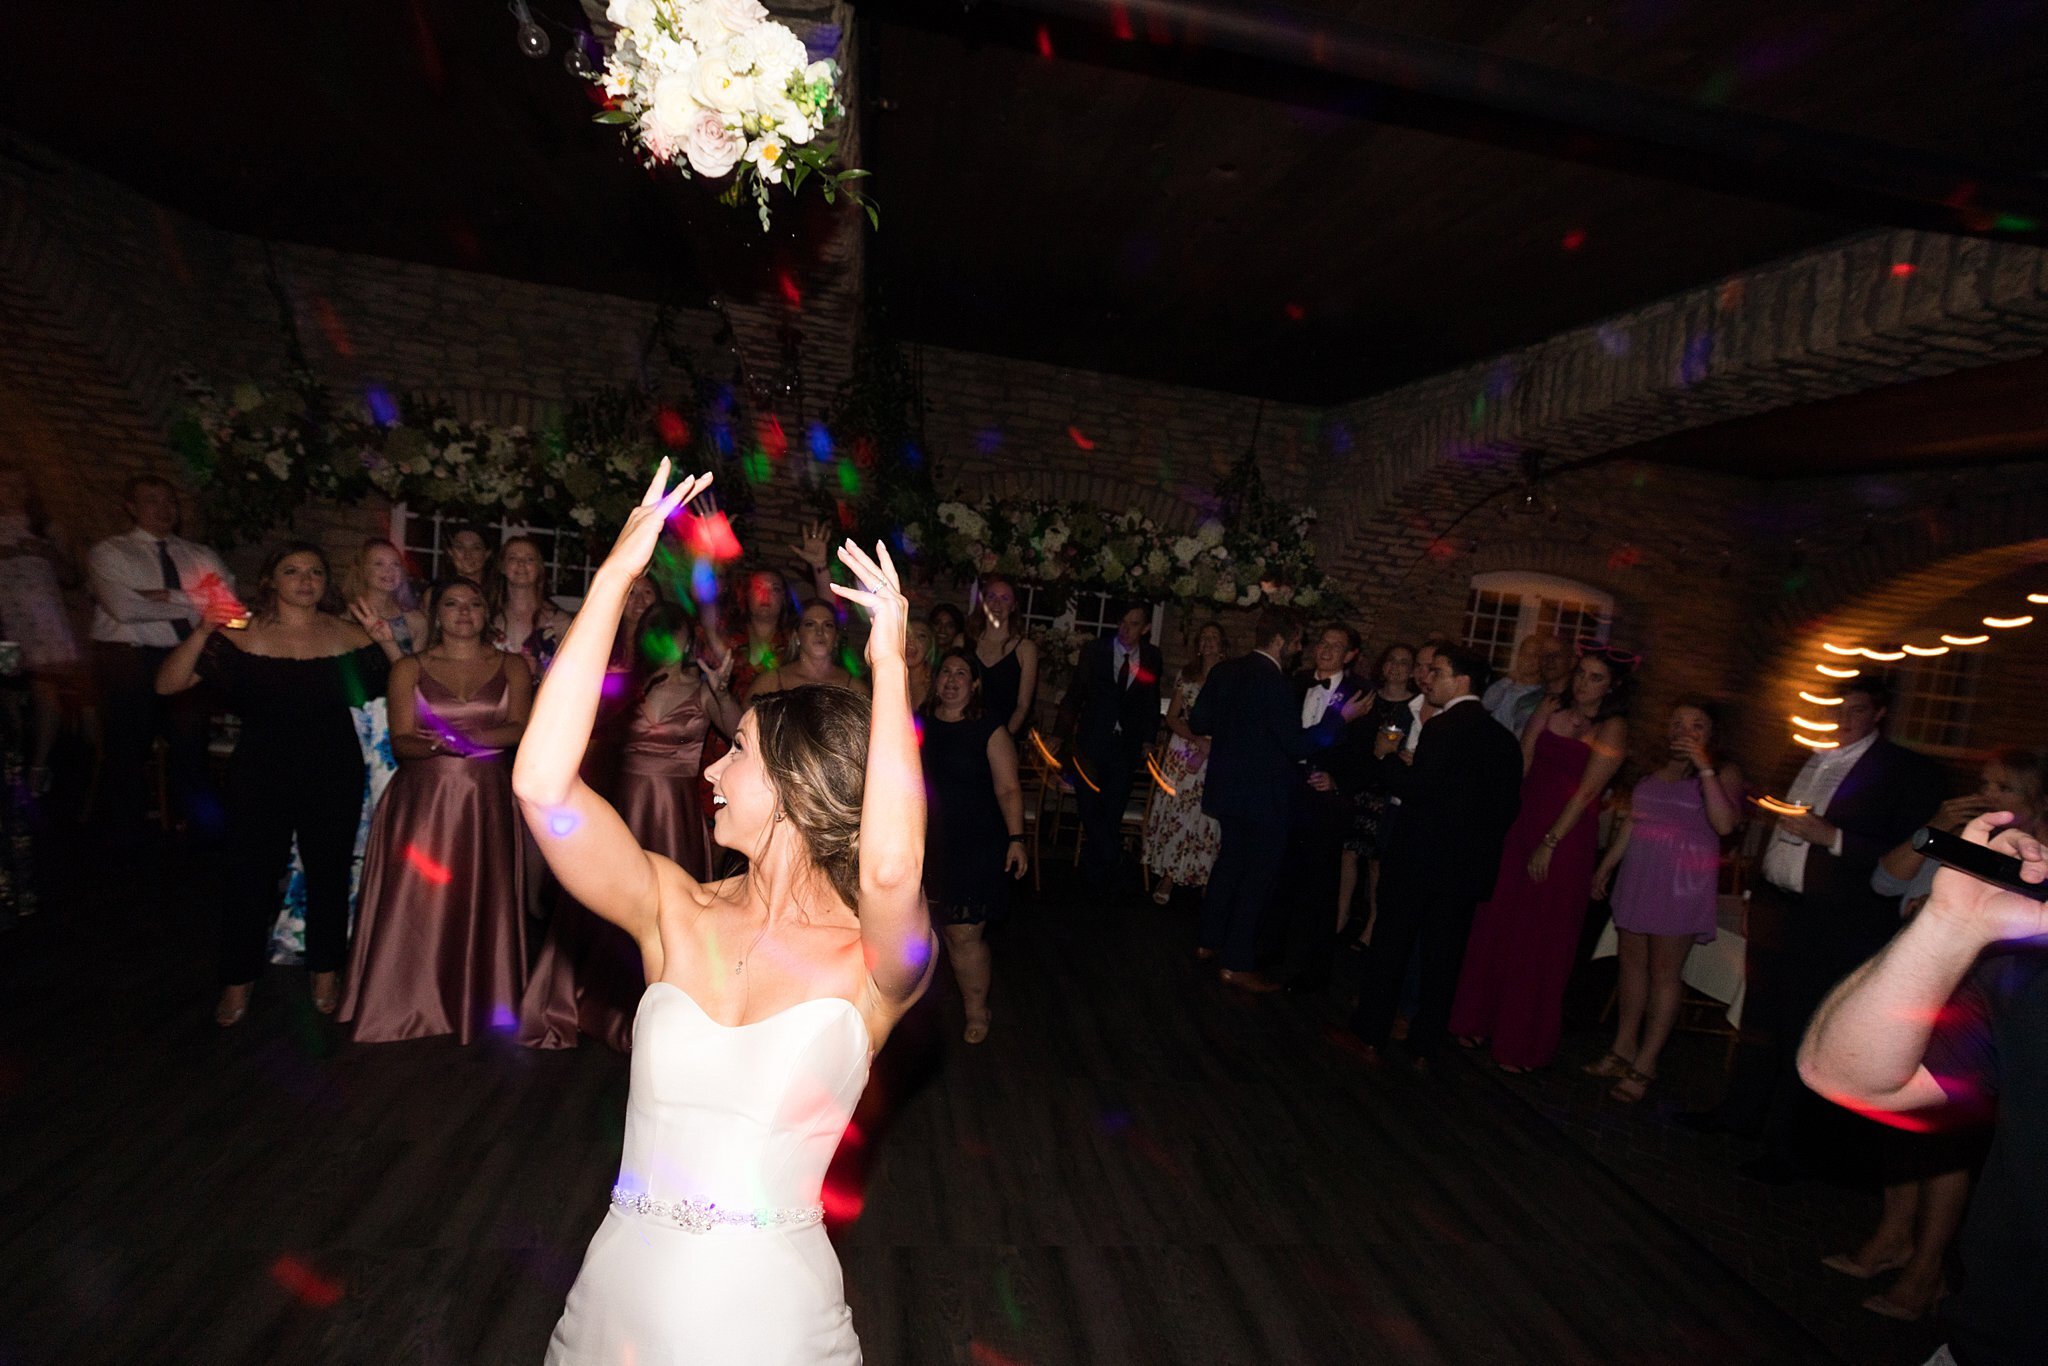  Bride tosses bouquet on the dance floor. 